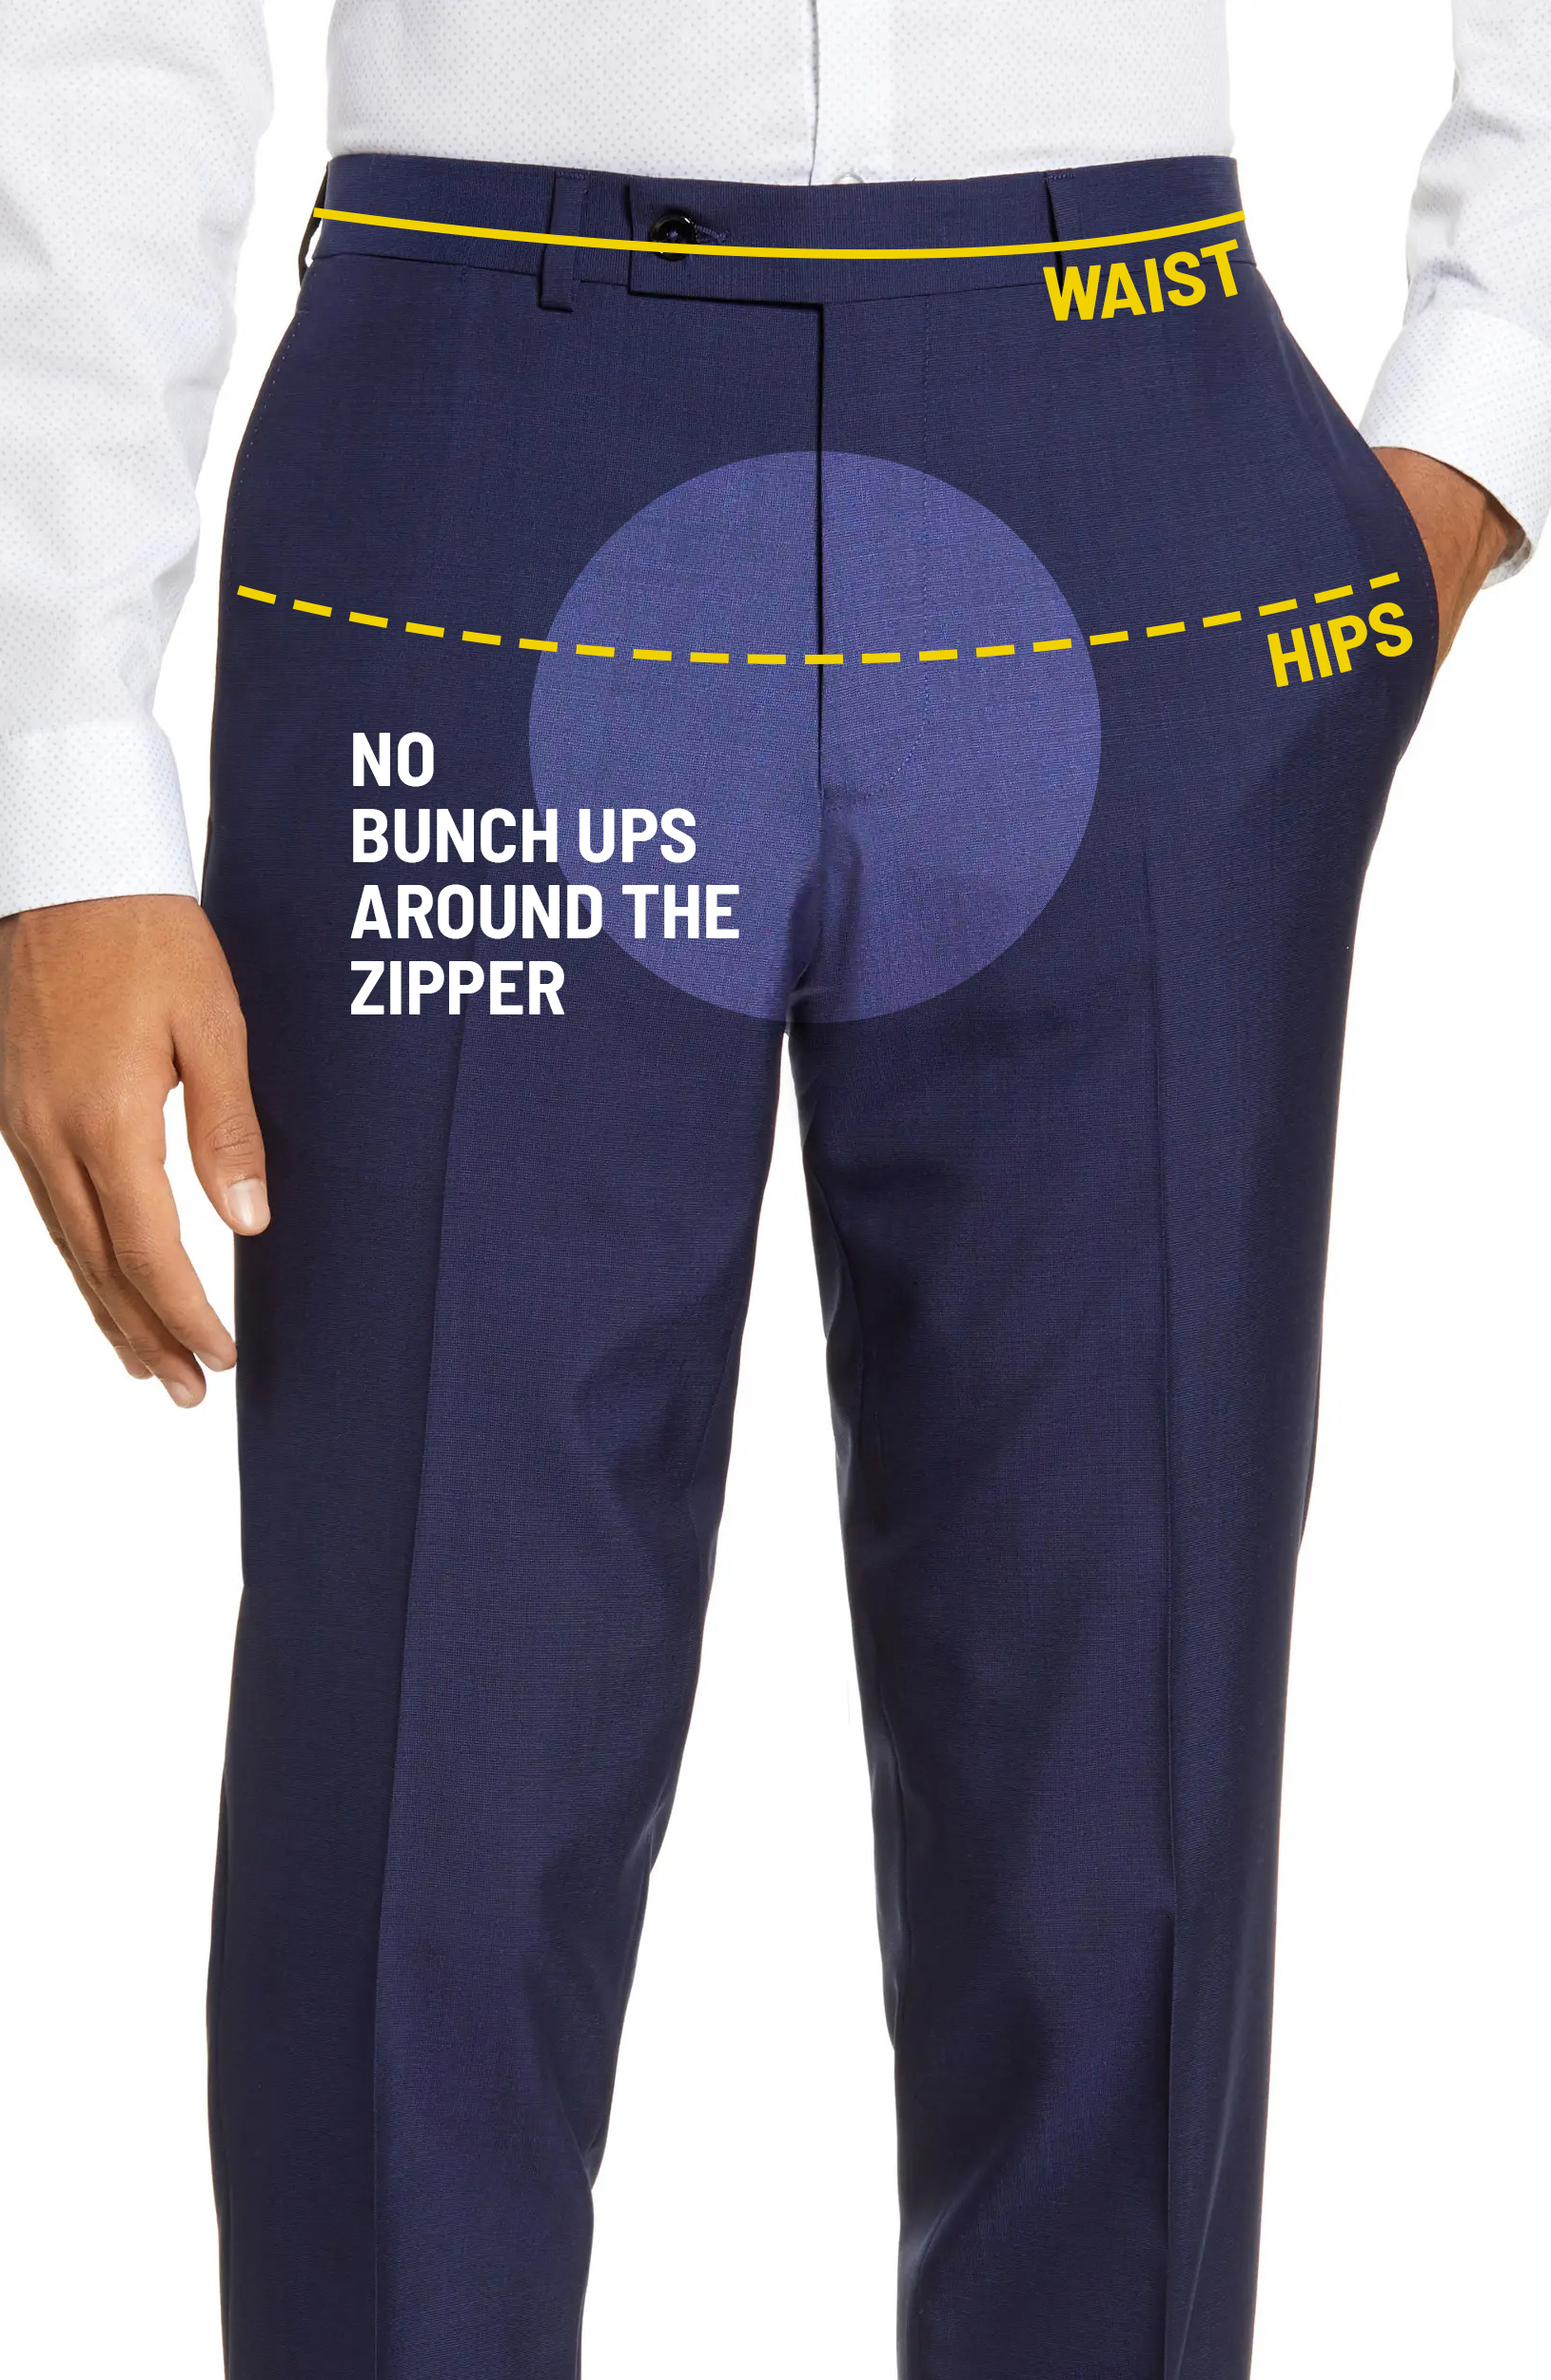 Proper pants' waist area fit